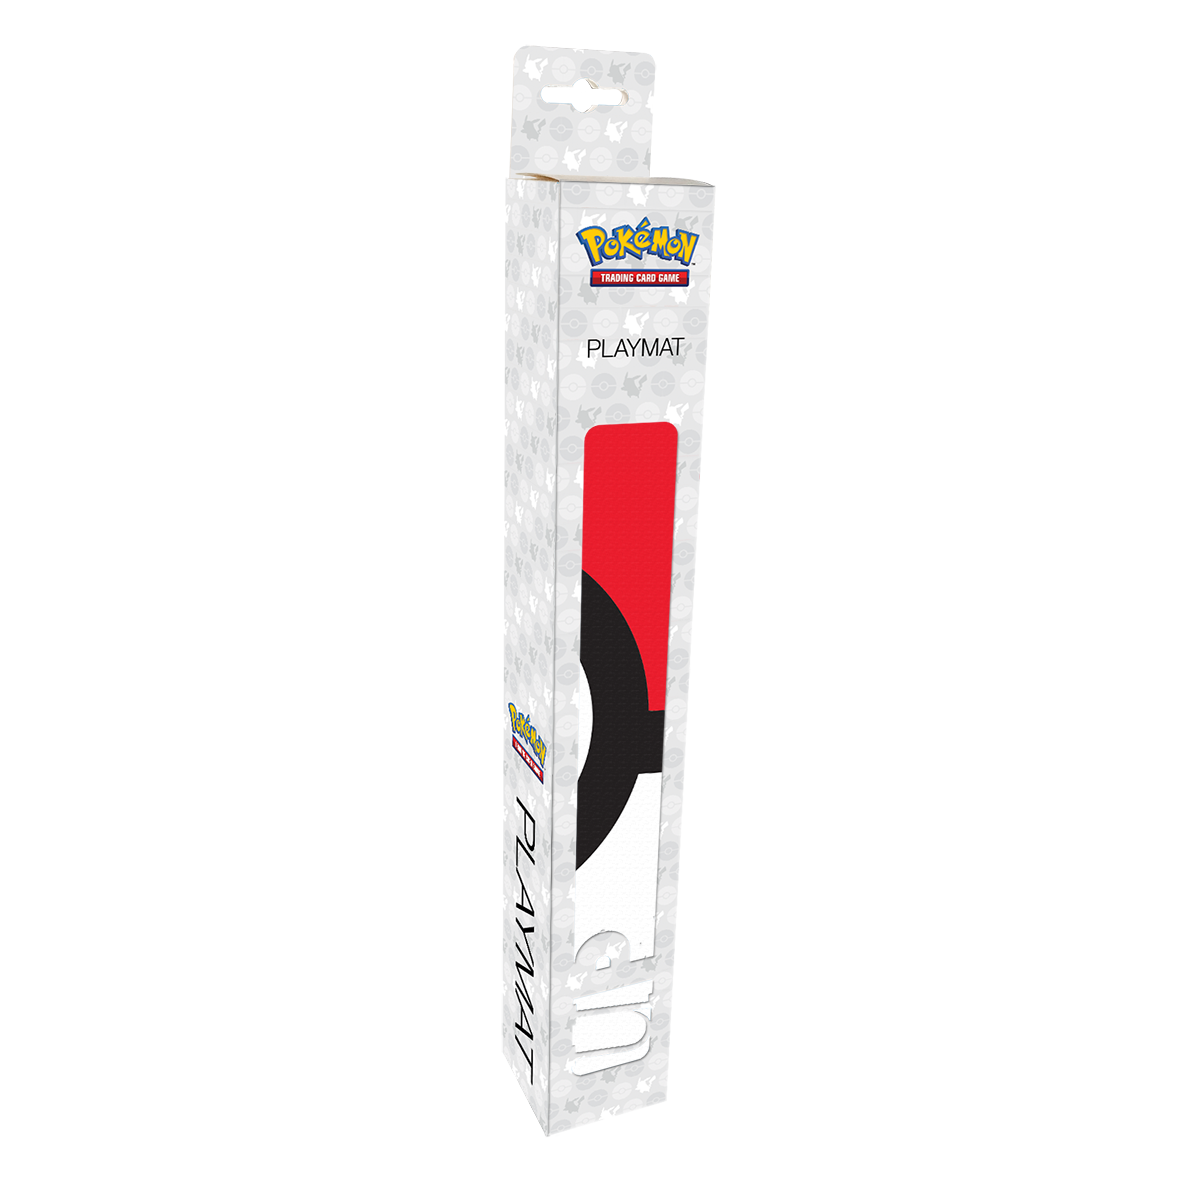  Pokemon Ultra Pro - Playmat Sword & Shield Galar